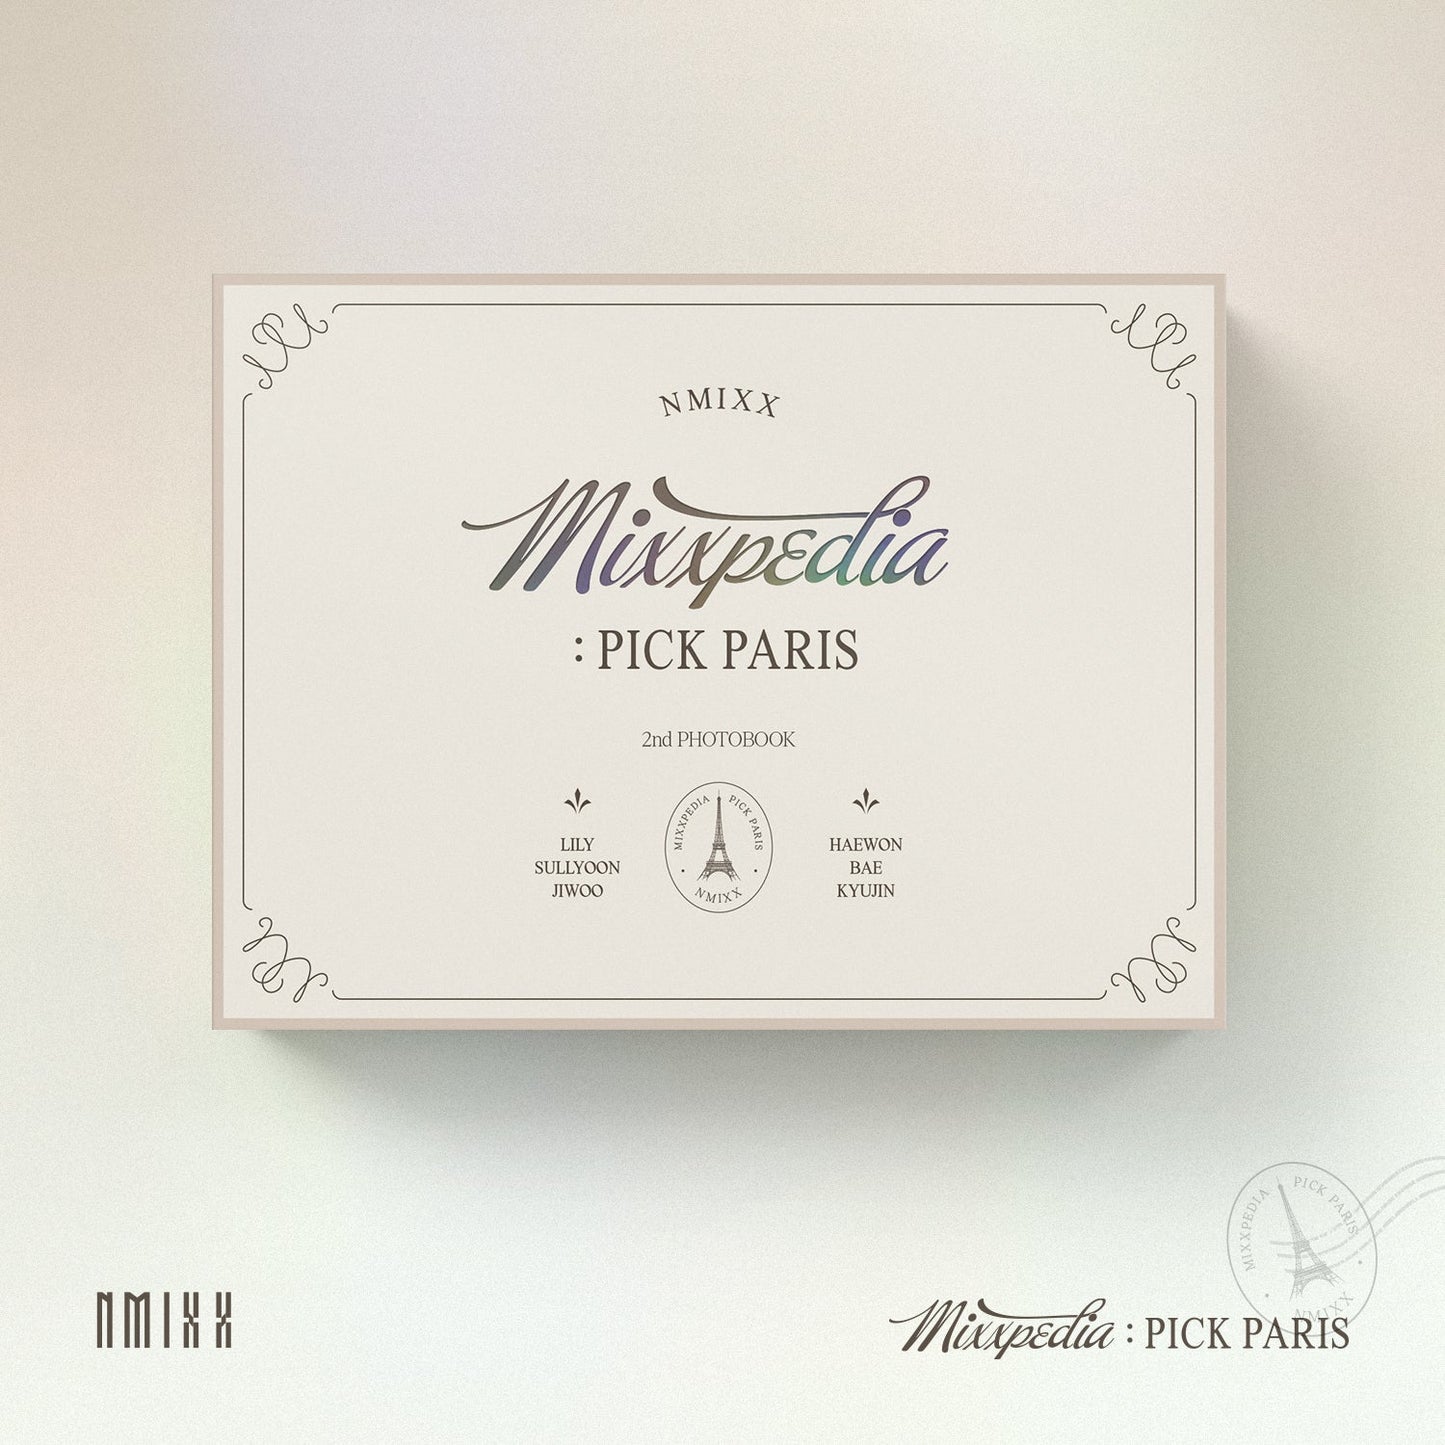 NMIXX 2ND PHOTOBOOK 'MIXXPEDIA : PICK PARIS' COVER